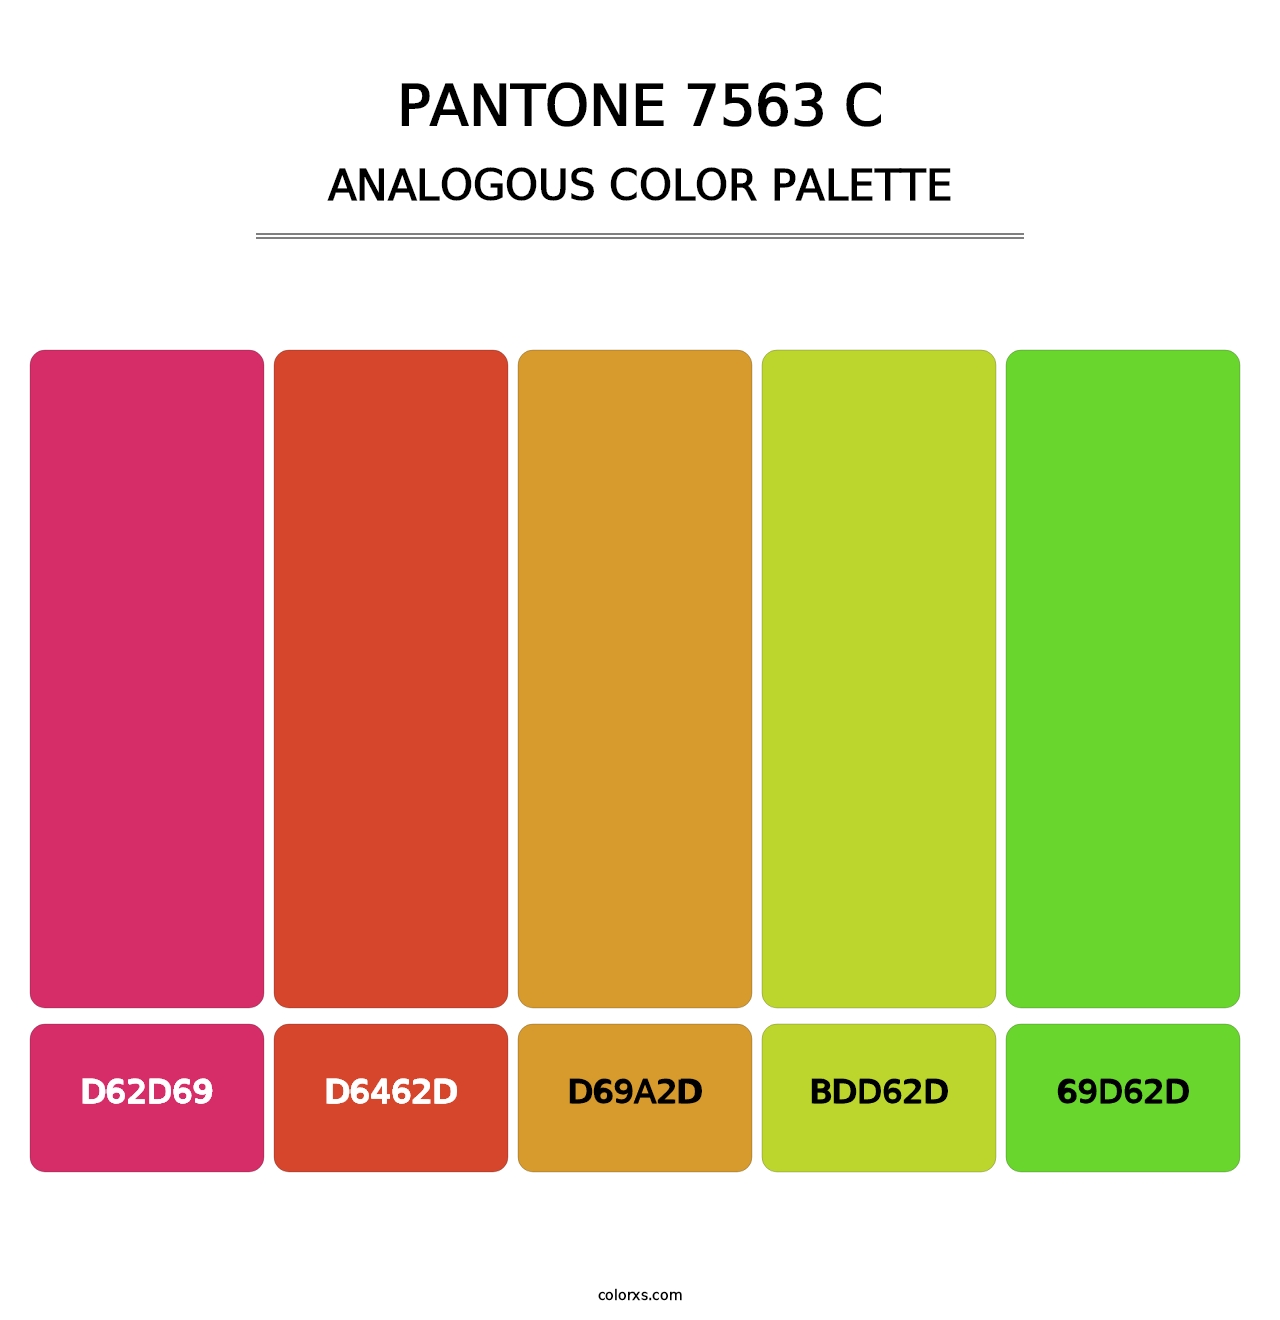 PANTONE 7563 C - Analogous Color Palette